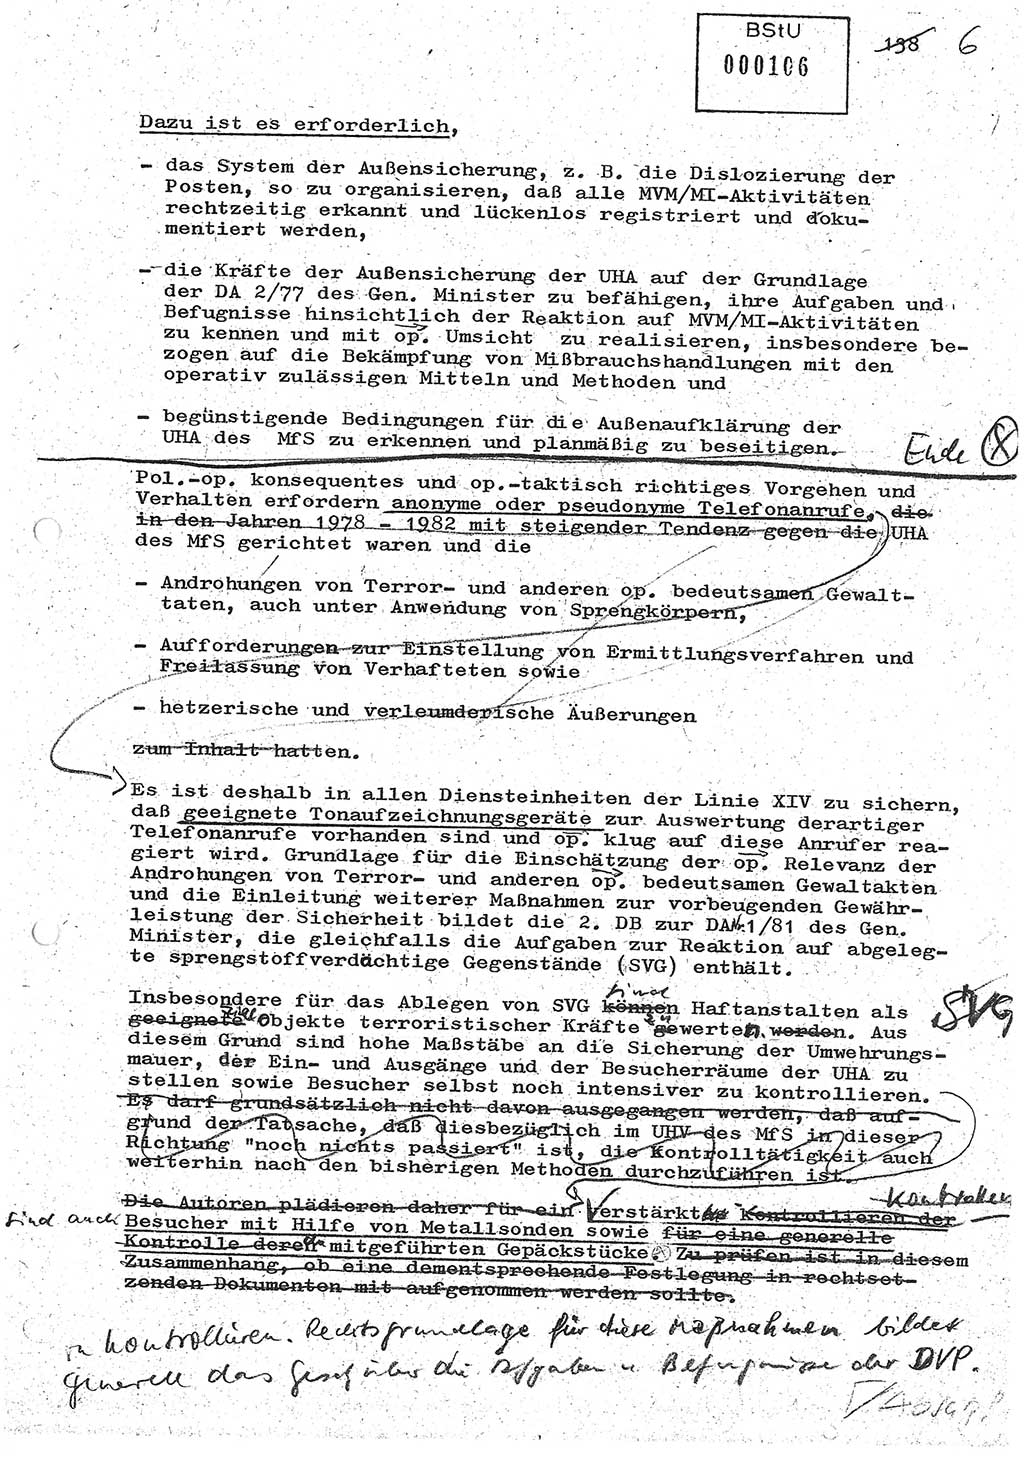 Diplomarbeit (Entwurf) Oberleutnant Peter Parke (Abt. ⅩⅣ), Ministerium für Staatssicherheit (MfS) [Deutsche Demokratische Republik (DDR)], Juristische Hochschule (JHS), Geheime Verschlußsache (GVS) o001-98/86, Potsdam 1986, Seite 106 (Dipl.-Arb. MfS DDR JHS GVS o001-98/86 1986, S. 106)